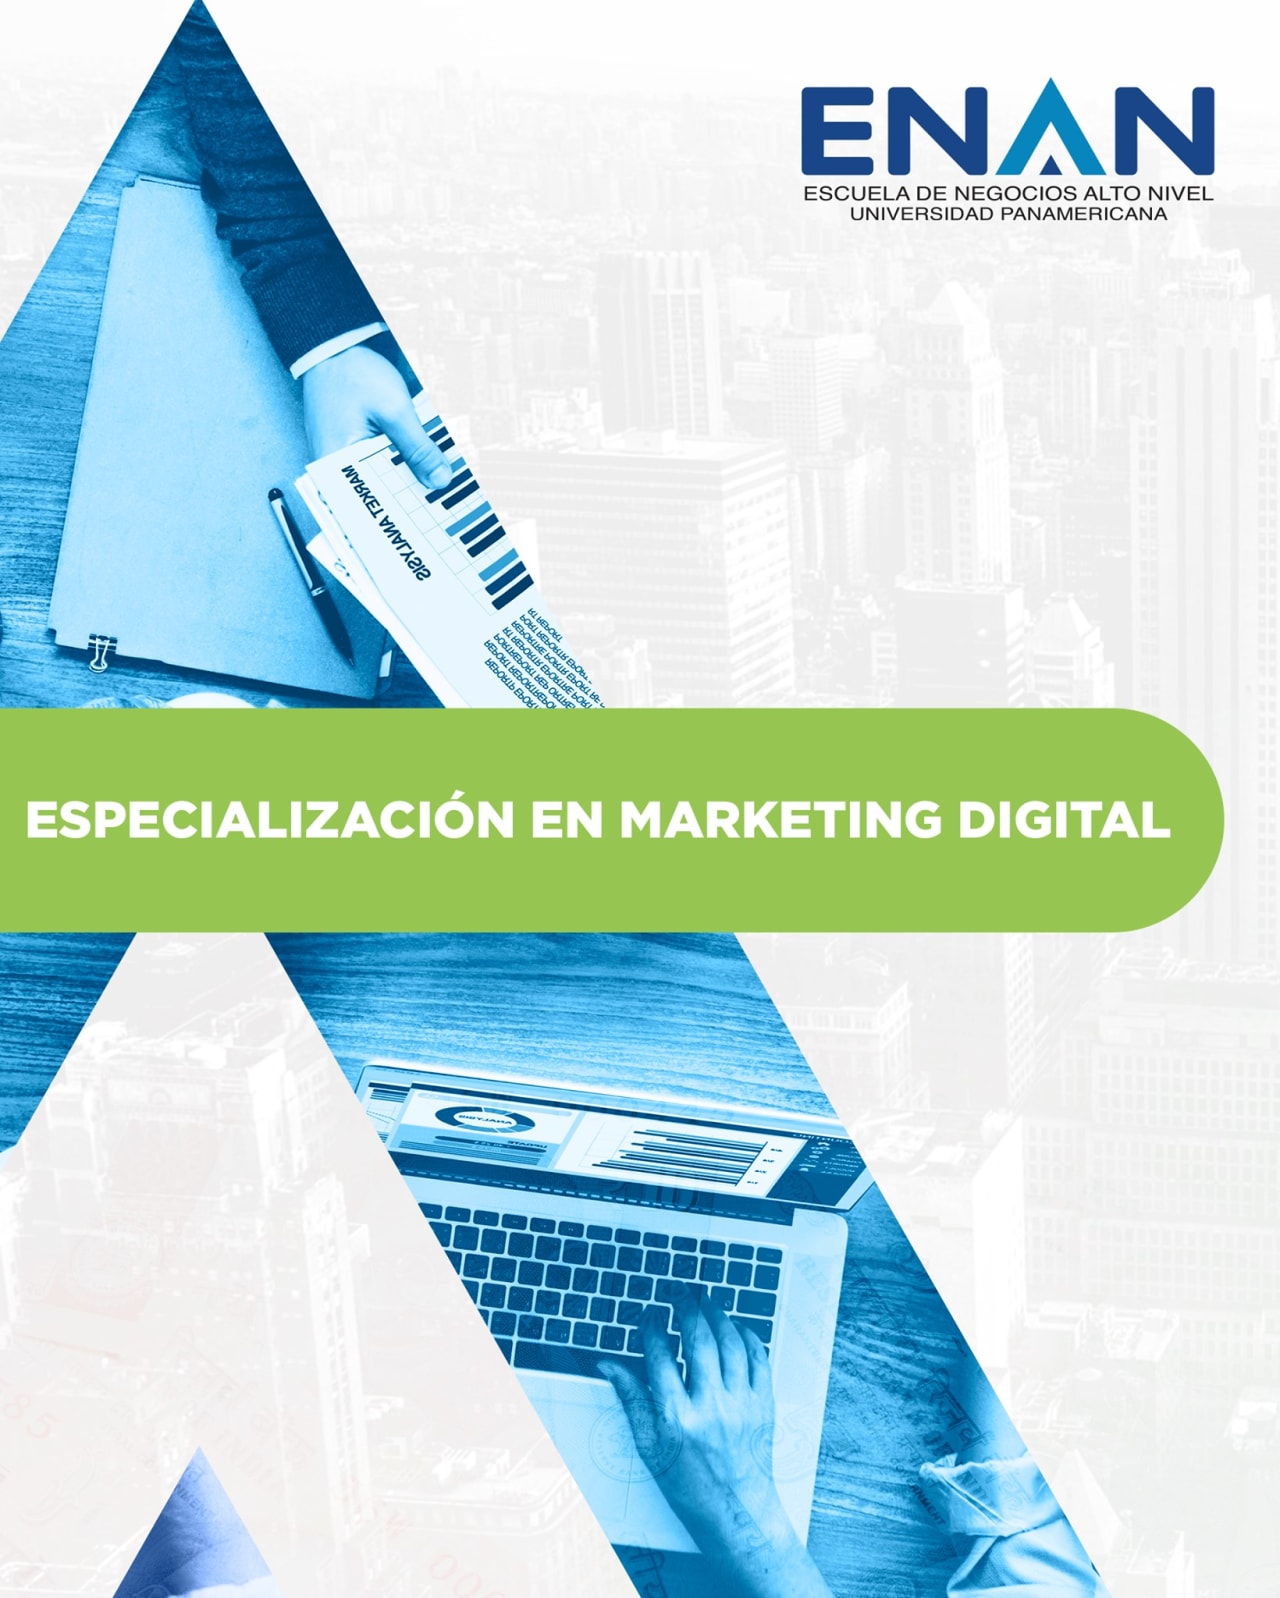 Escuela de Negocios Alto Nivel - Universidad Panamericana de Guatemala Especialización en Marketing Digital